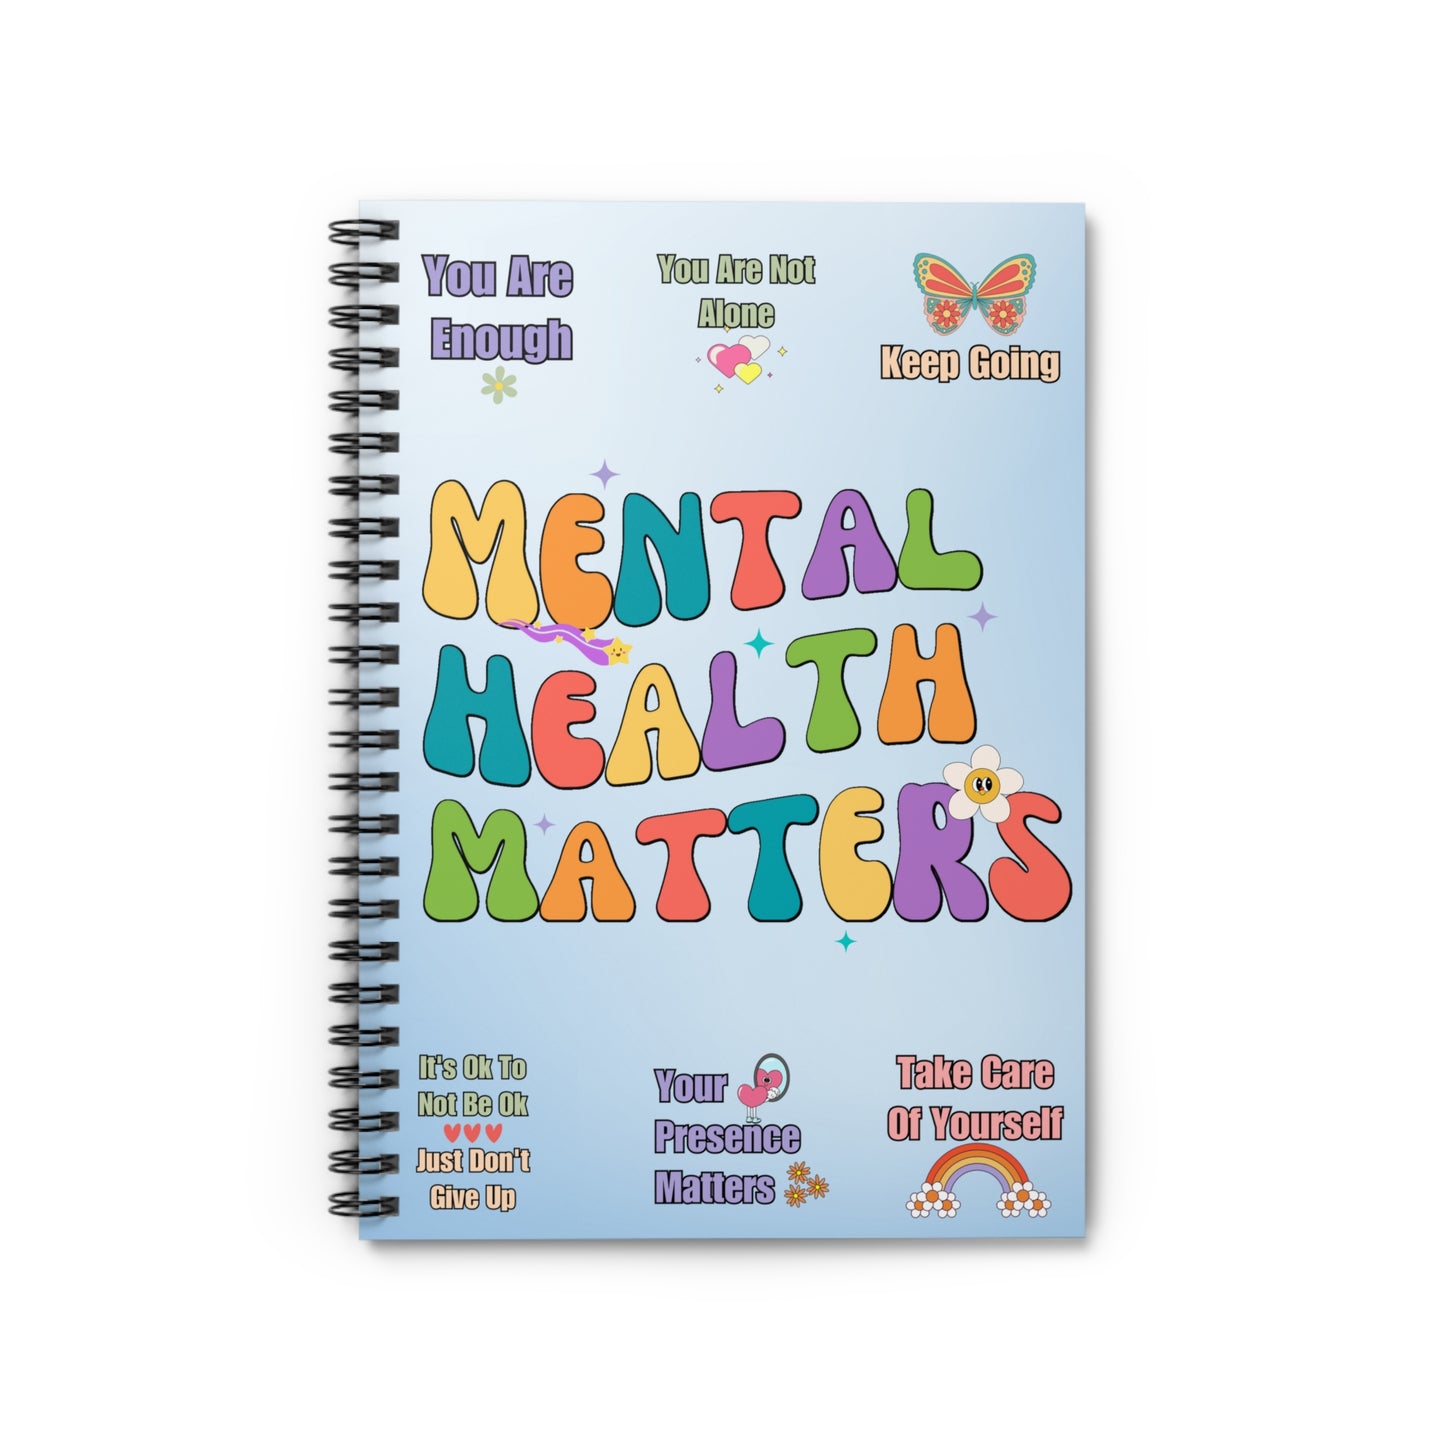 Mental Health Matters - Spiral Notebook